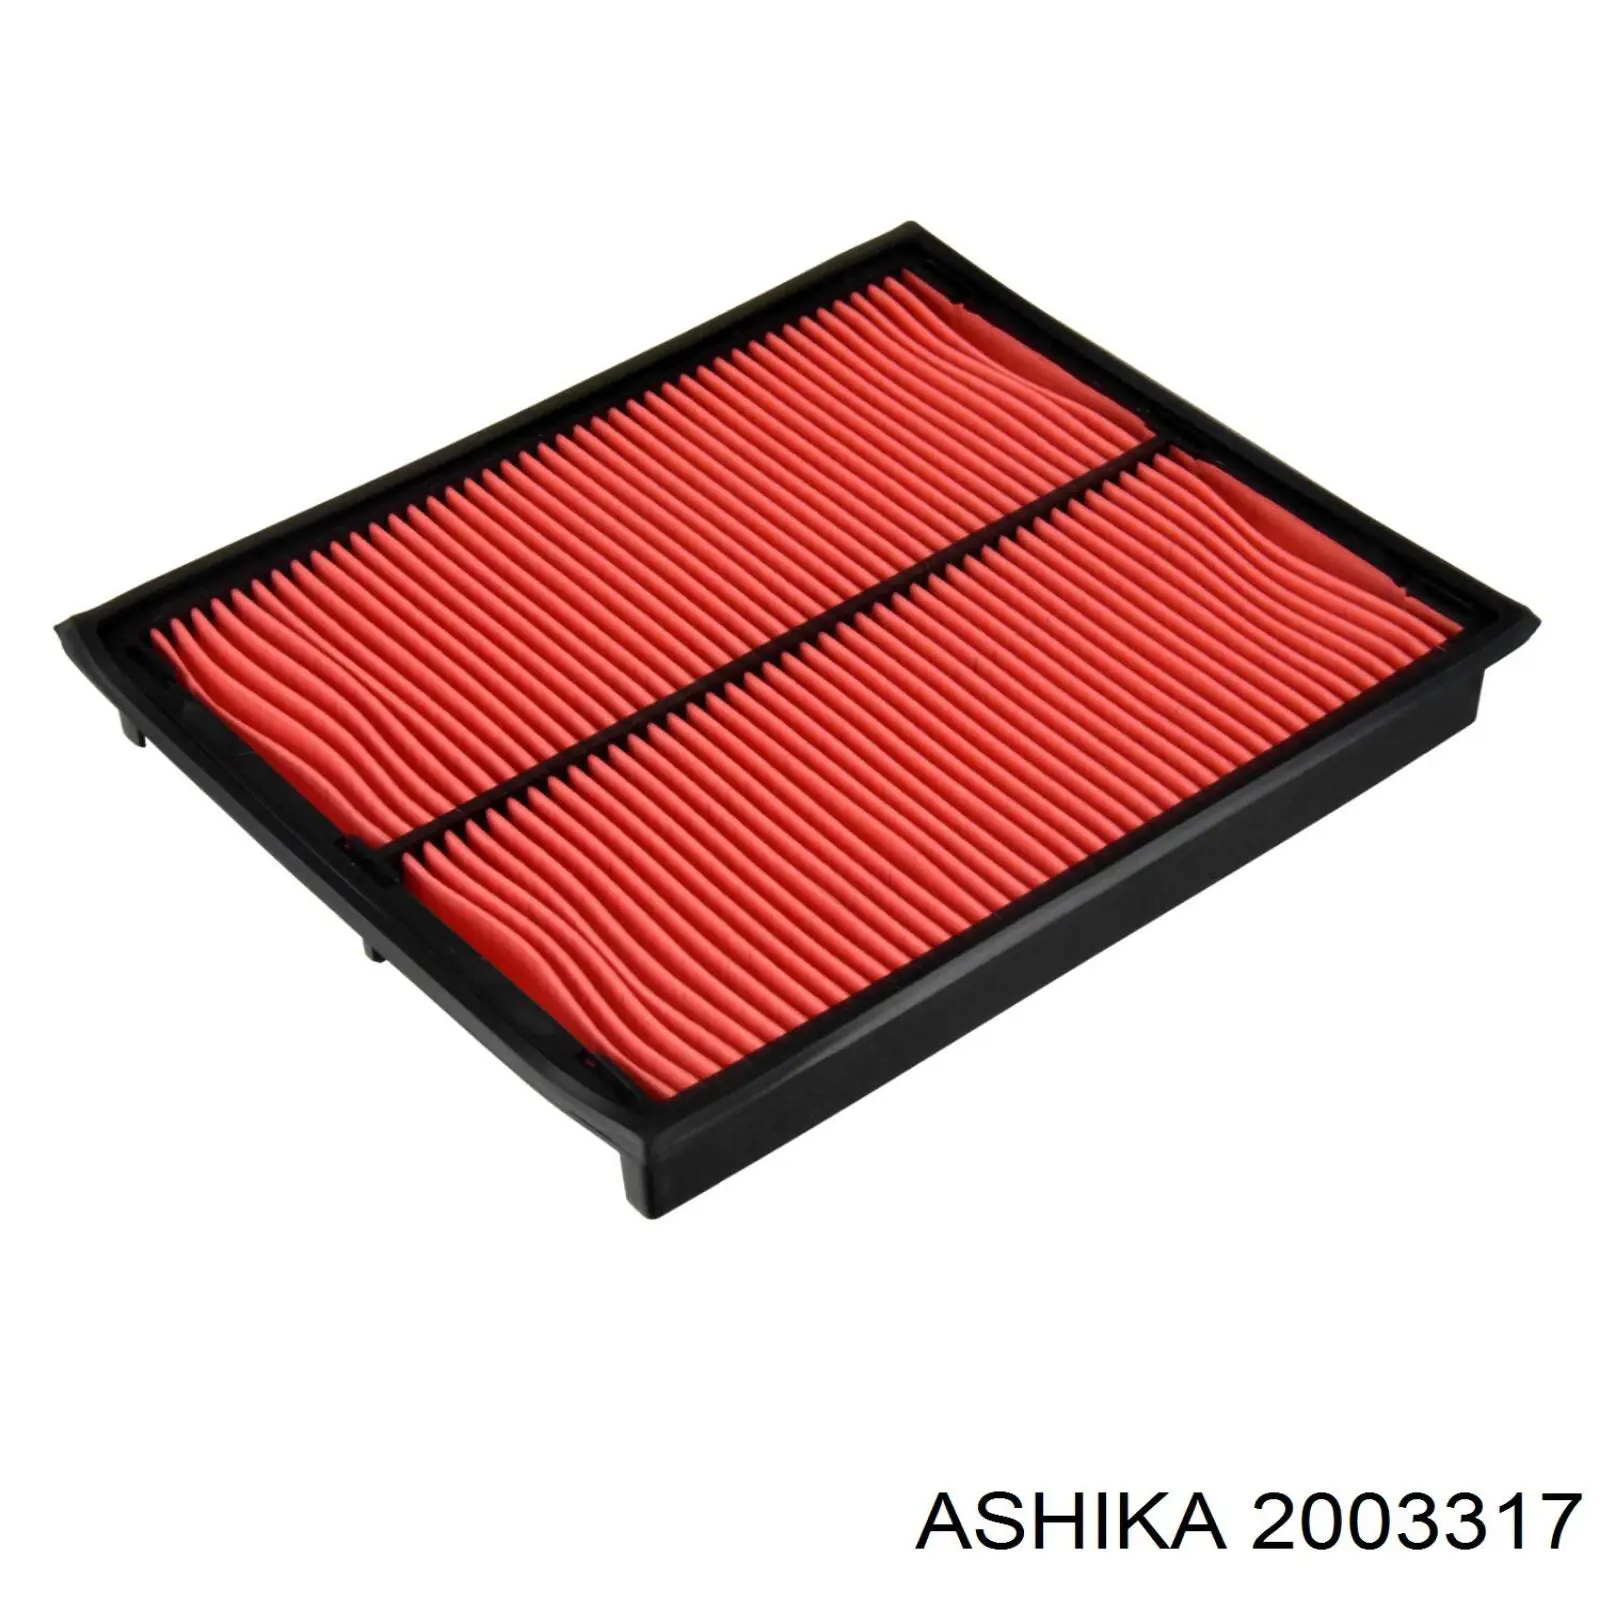 2003317 Ashika воздушный фильтр